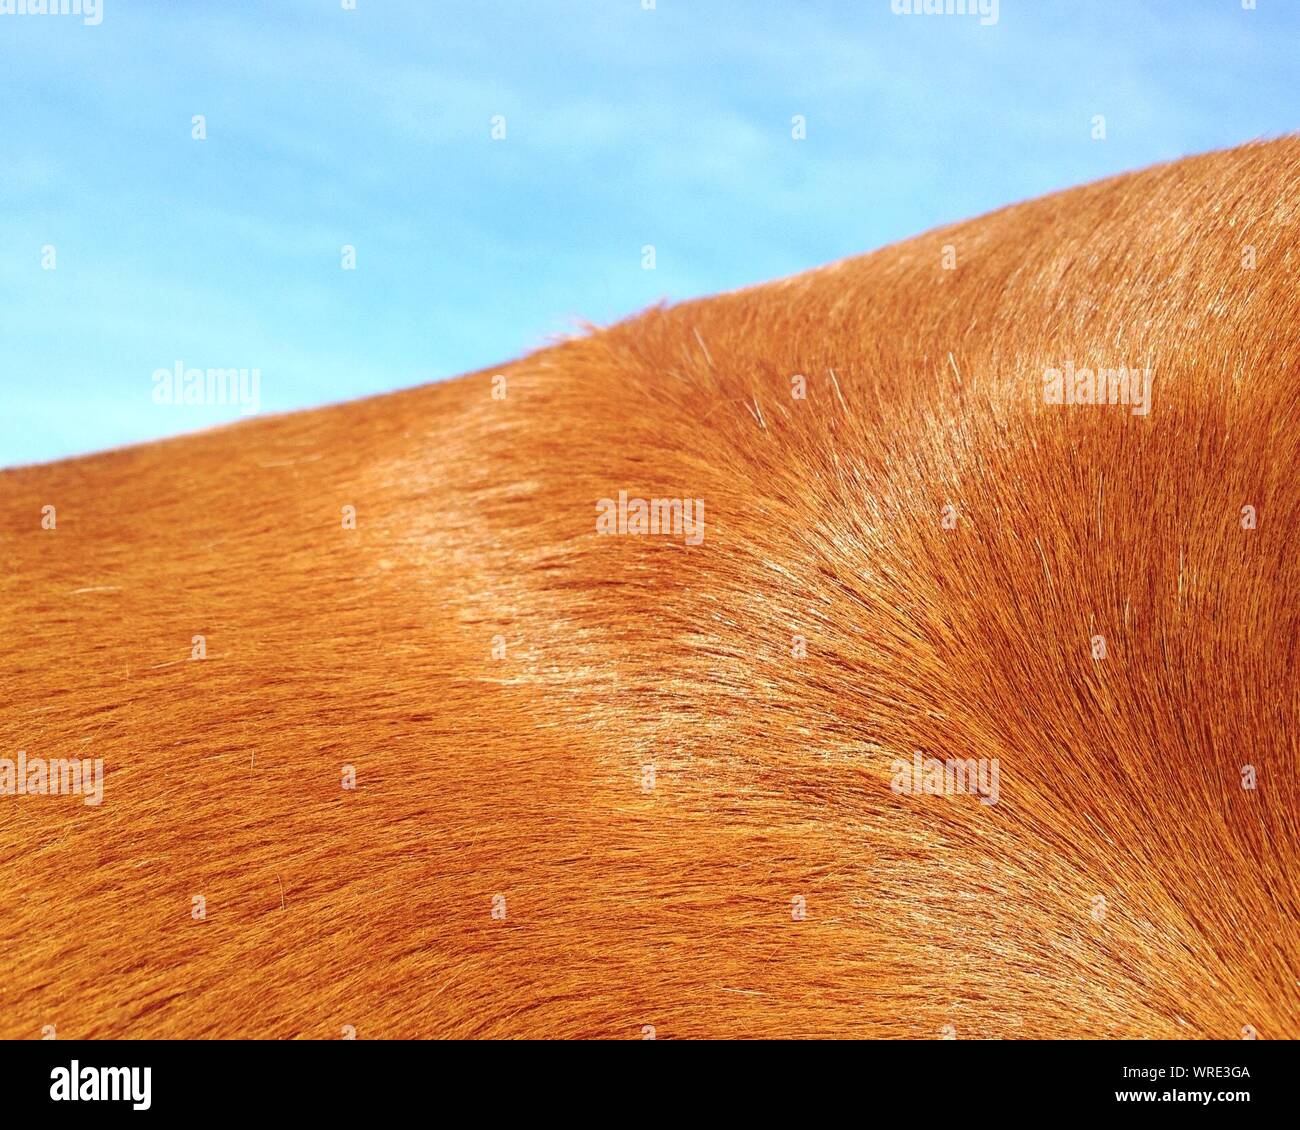 Detail Shot Of Animal Hair Stock Photo